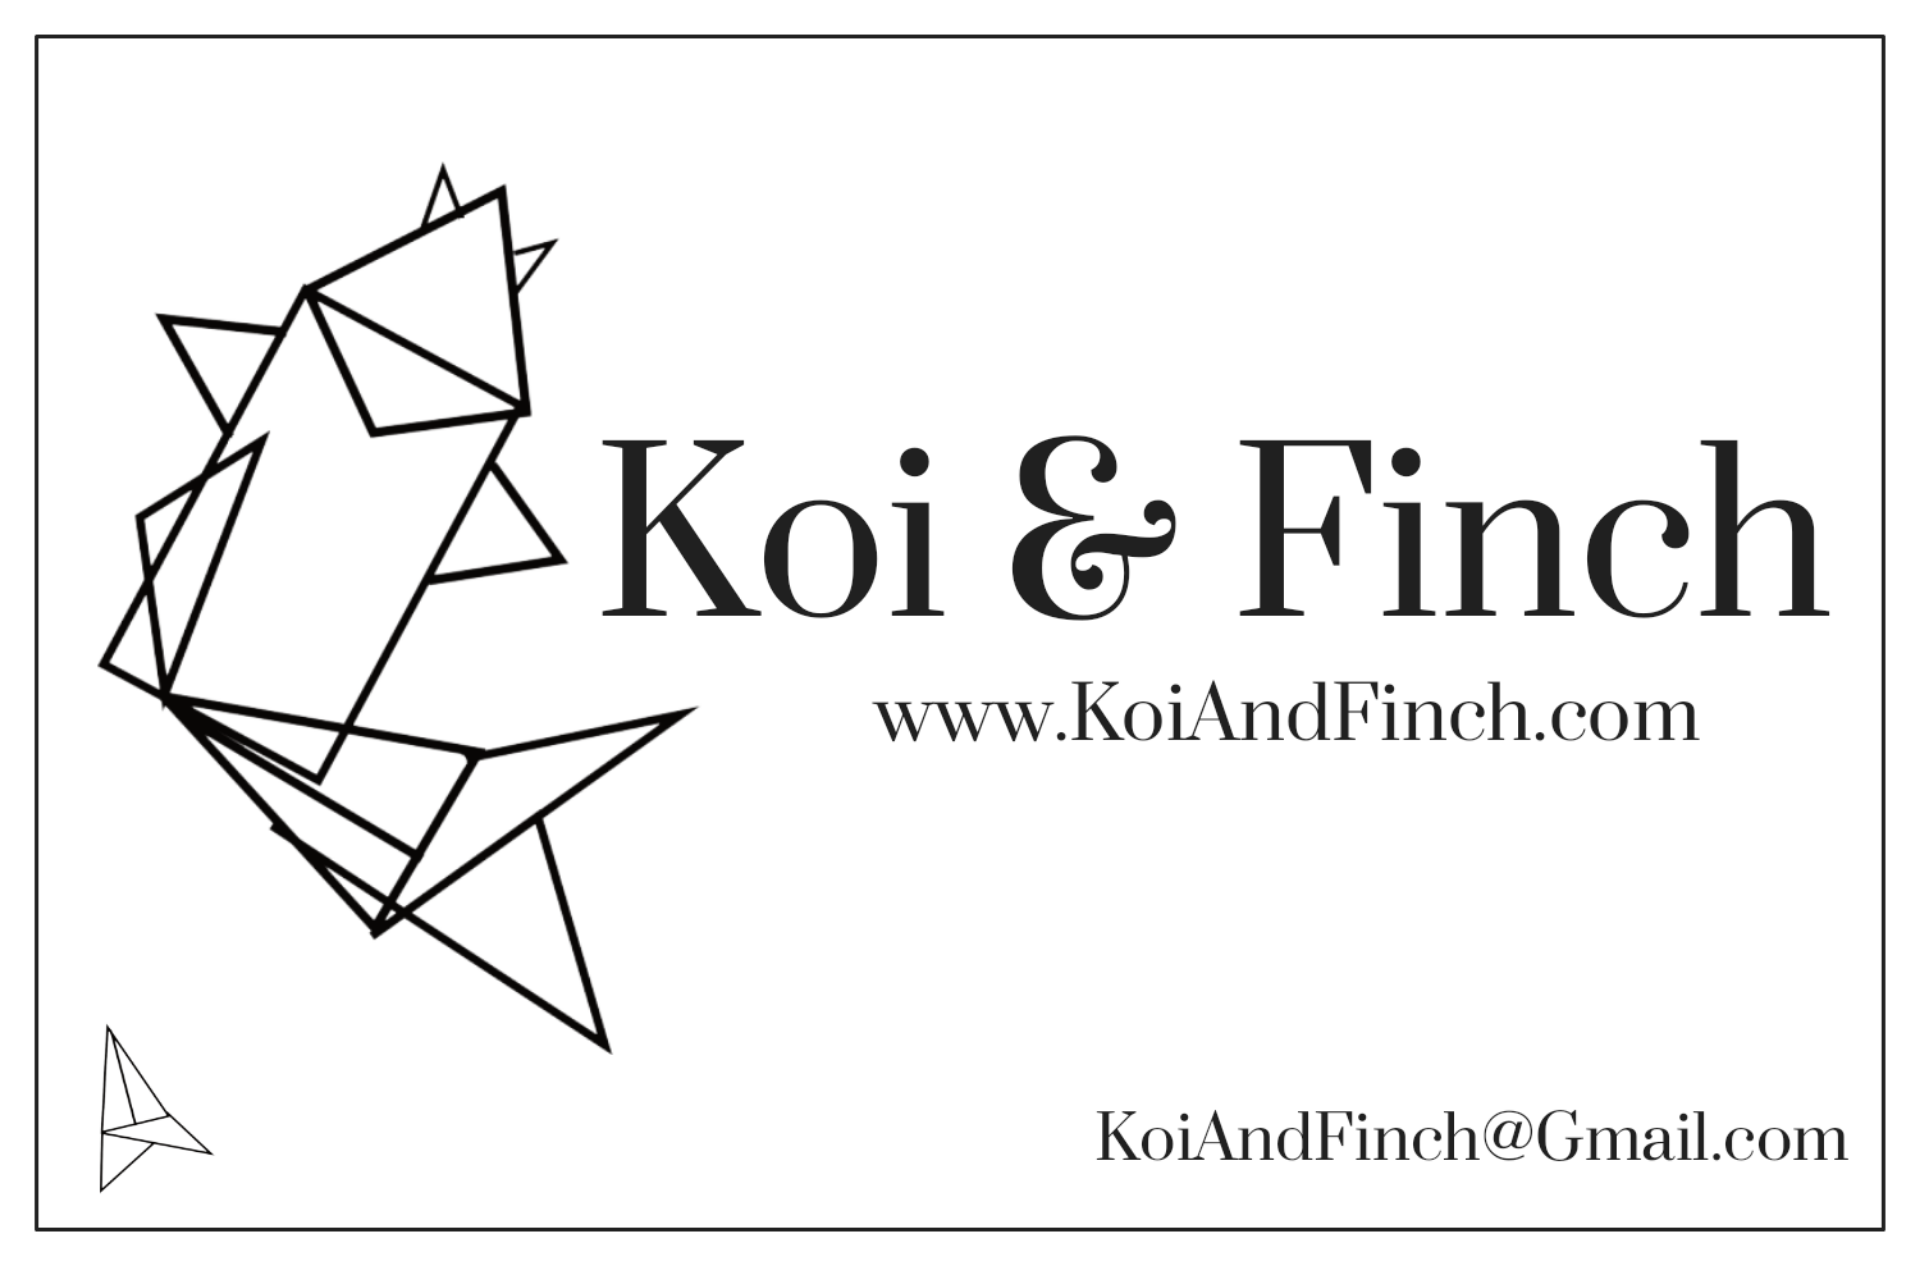 Koi & Finch